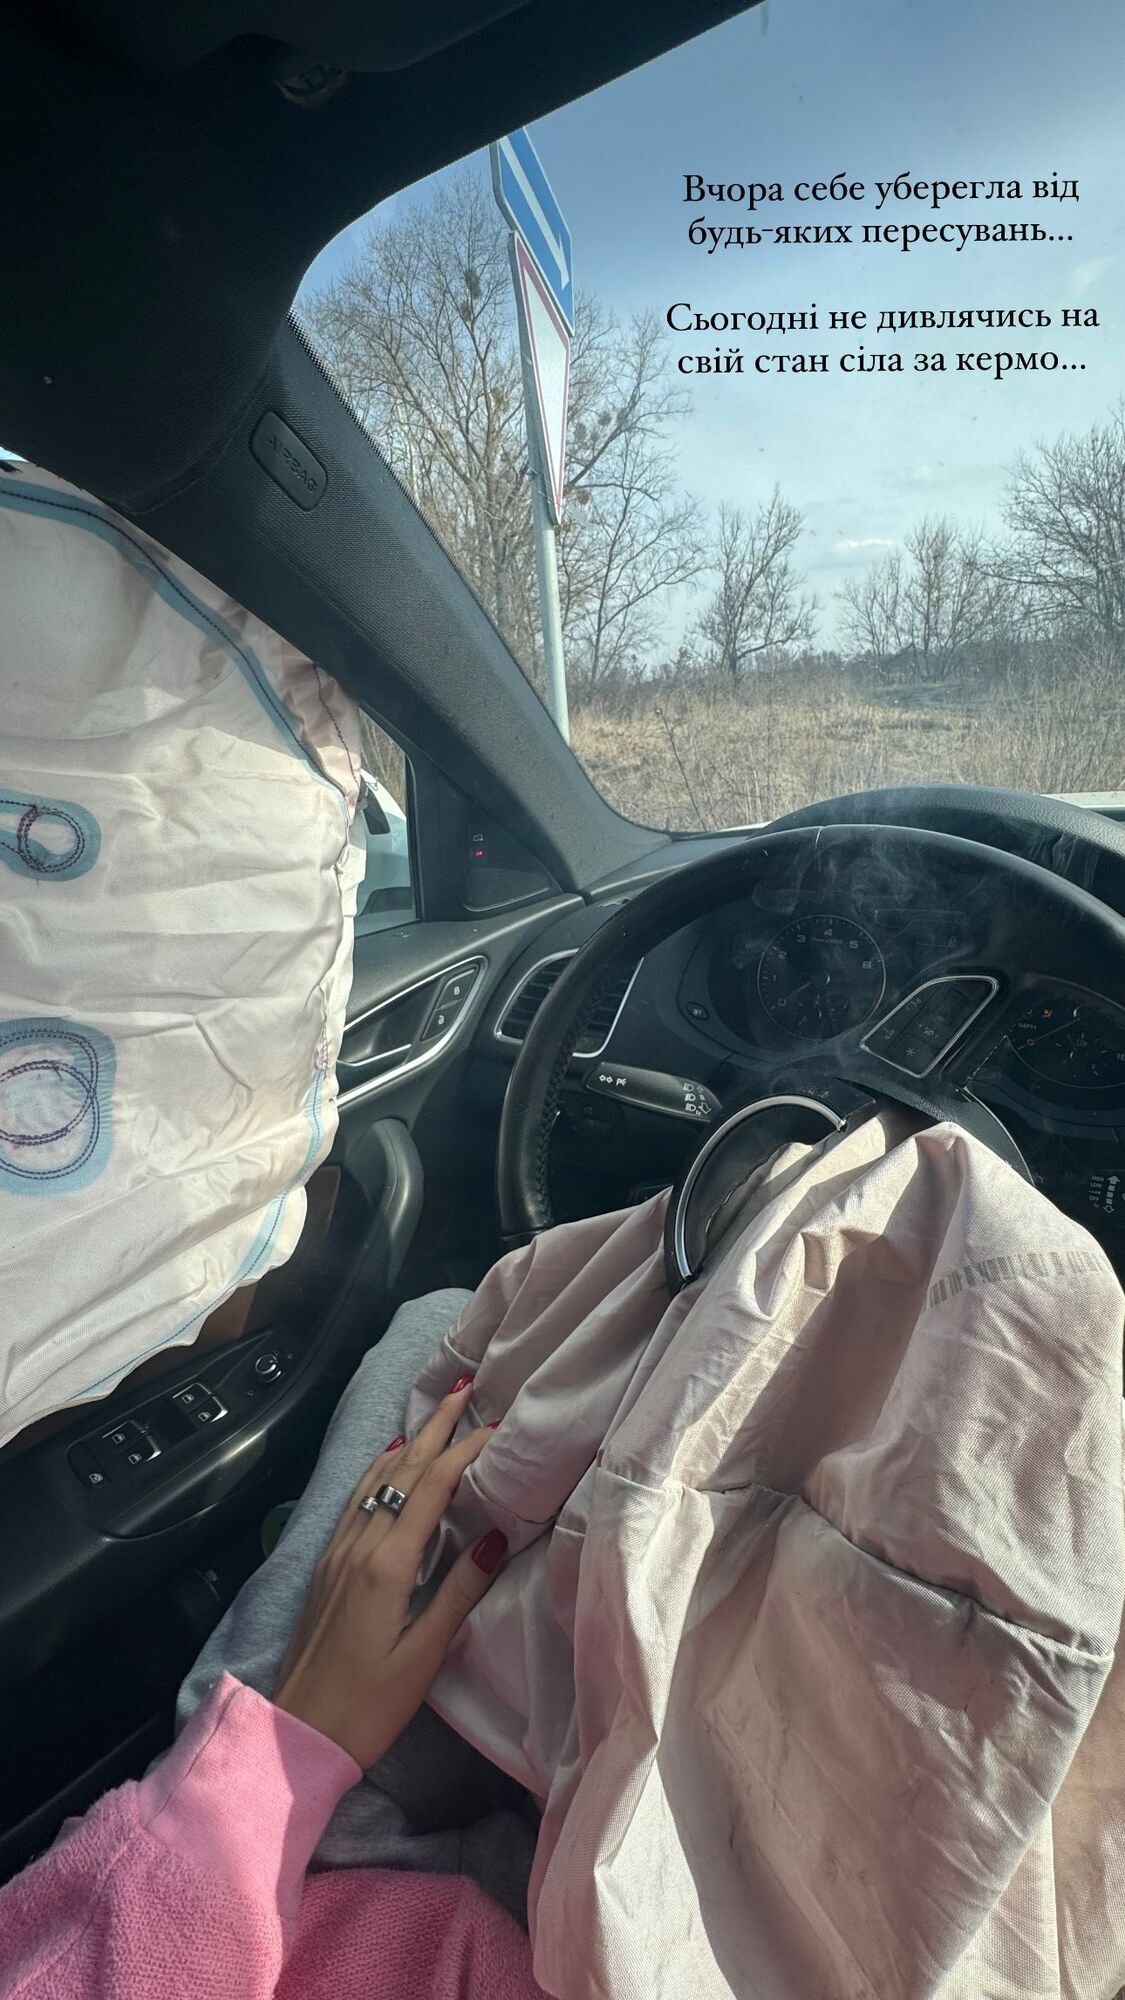 "Міс Україна Всесвіт-2021" Анна Неплях потрапила в серйозну ДТП і показала розтрощене авто. Фото